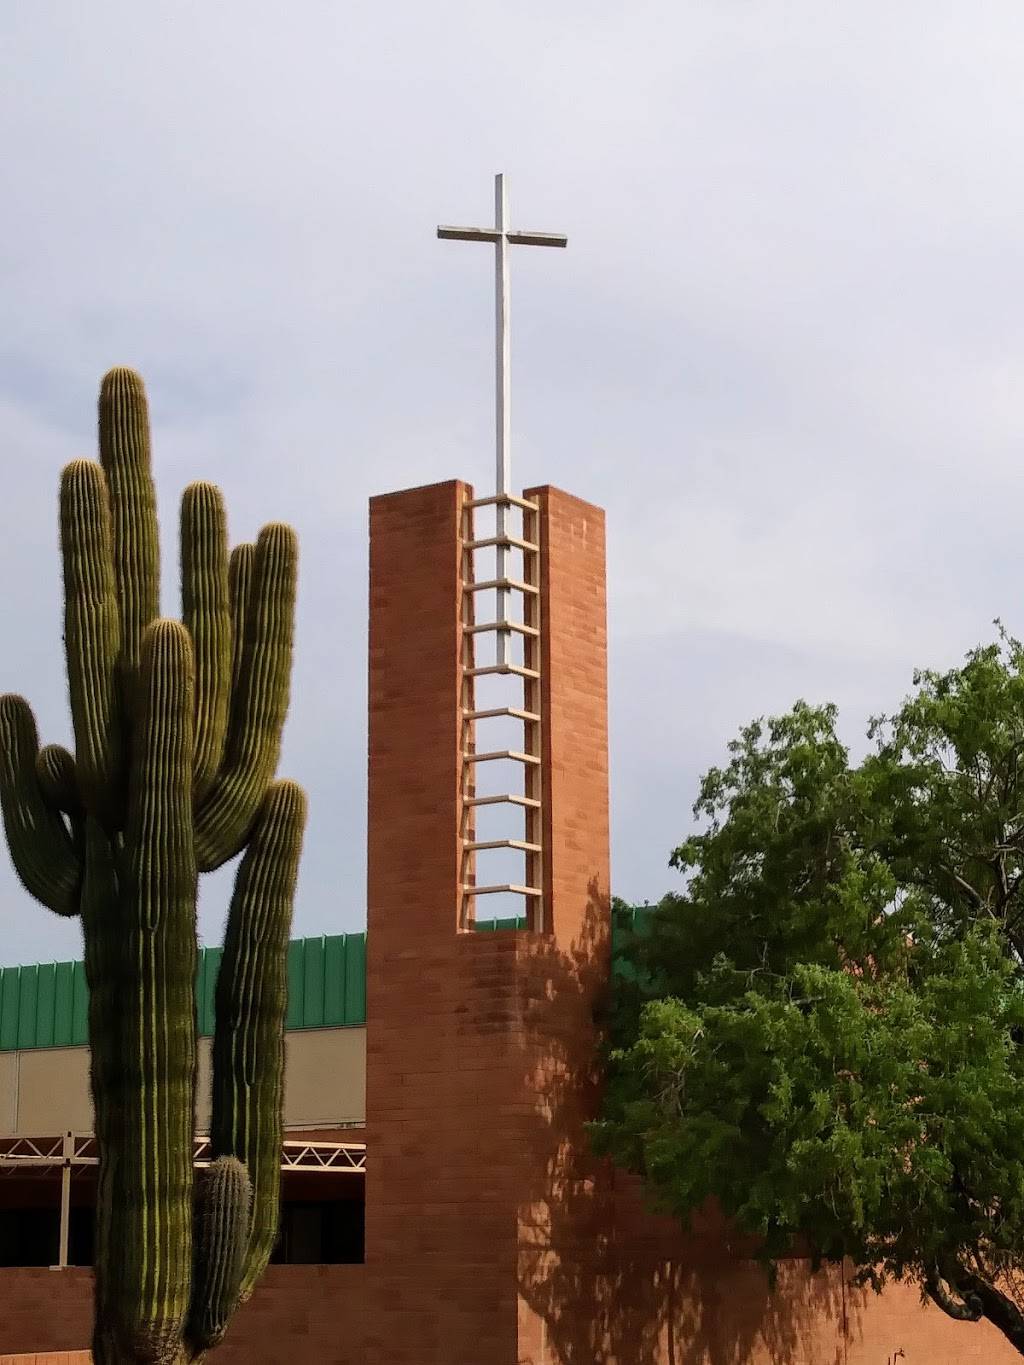 Desert Cross Lutheran Church | 8600 S McClintock Dr, Tempe, AZ 85284, USA | Phone: (480) 730-8600